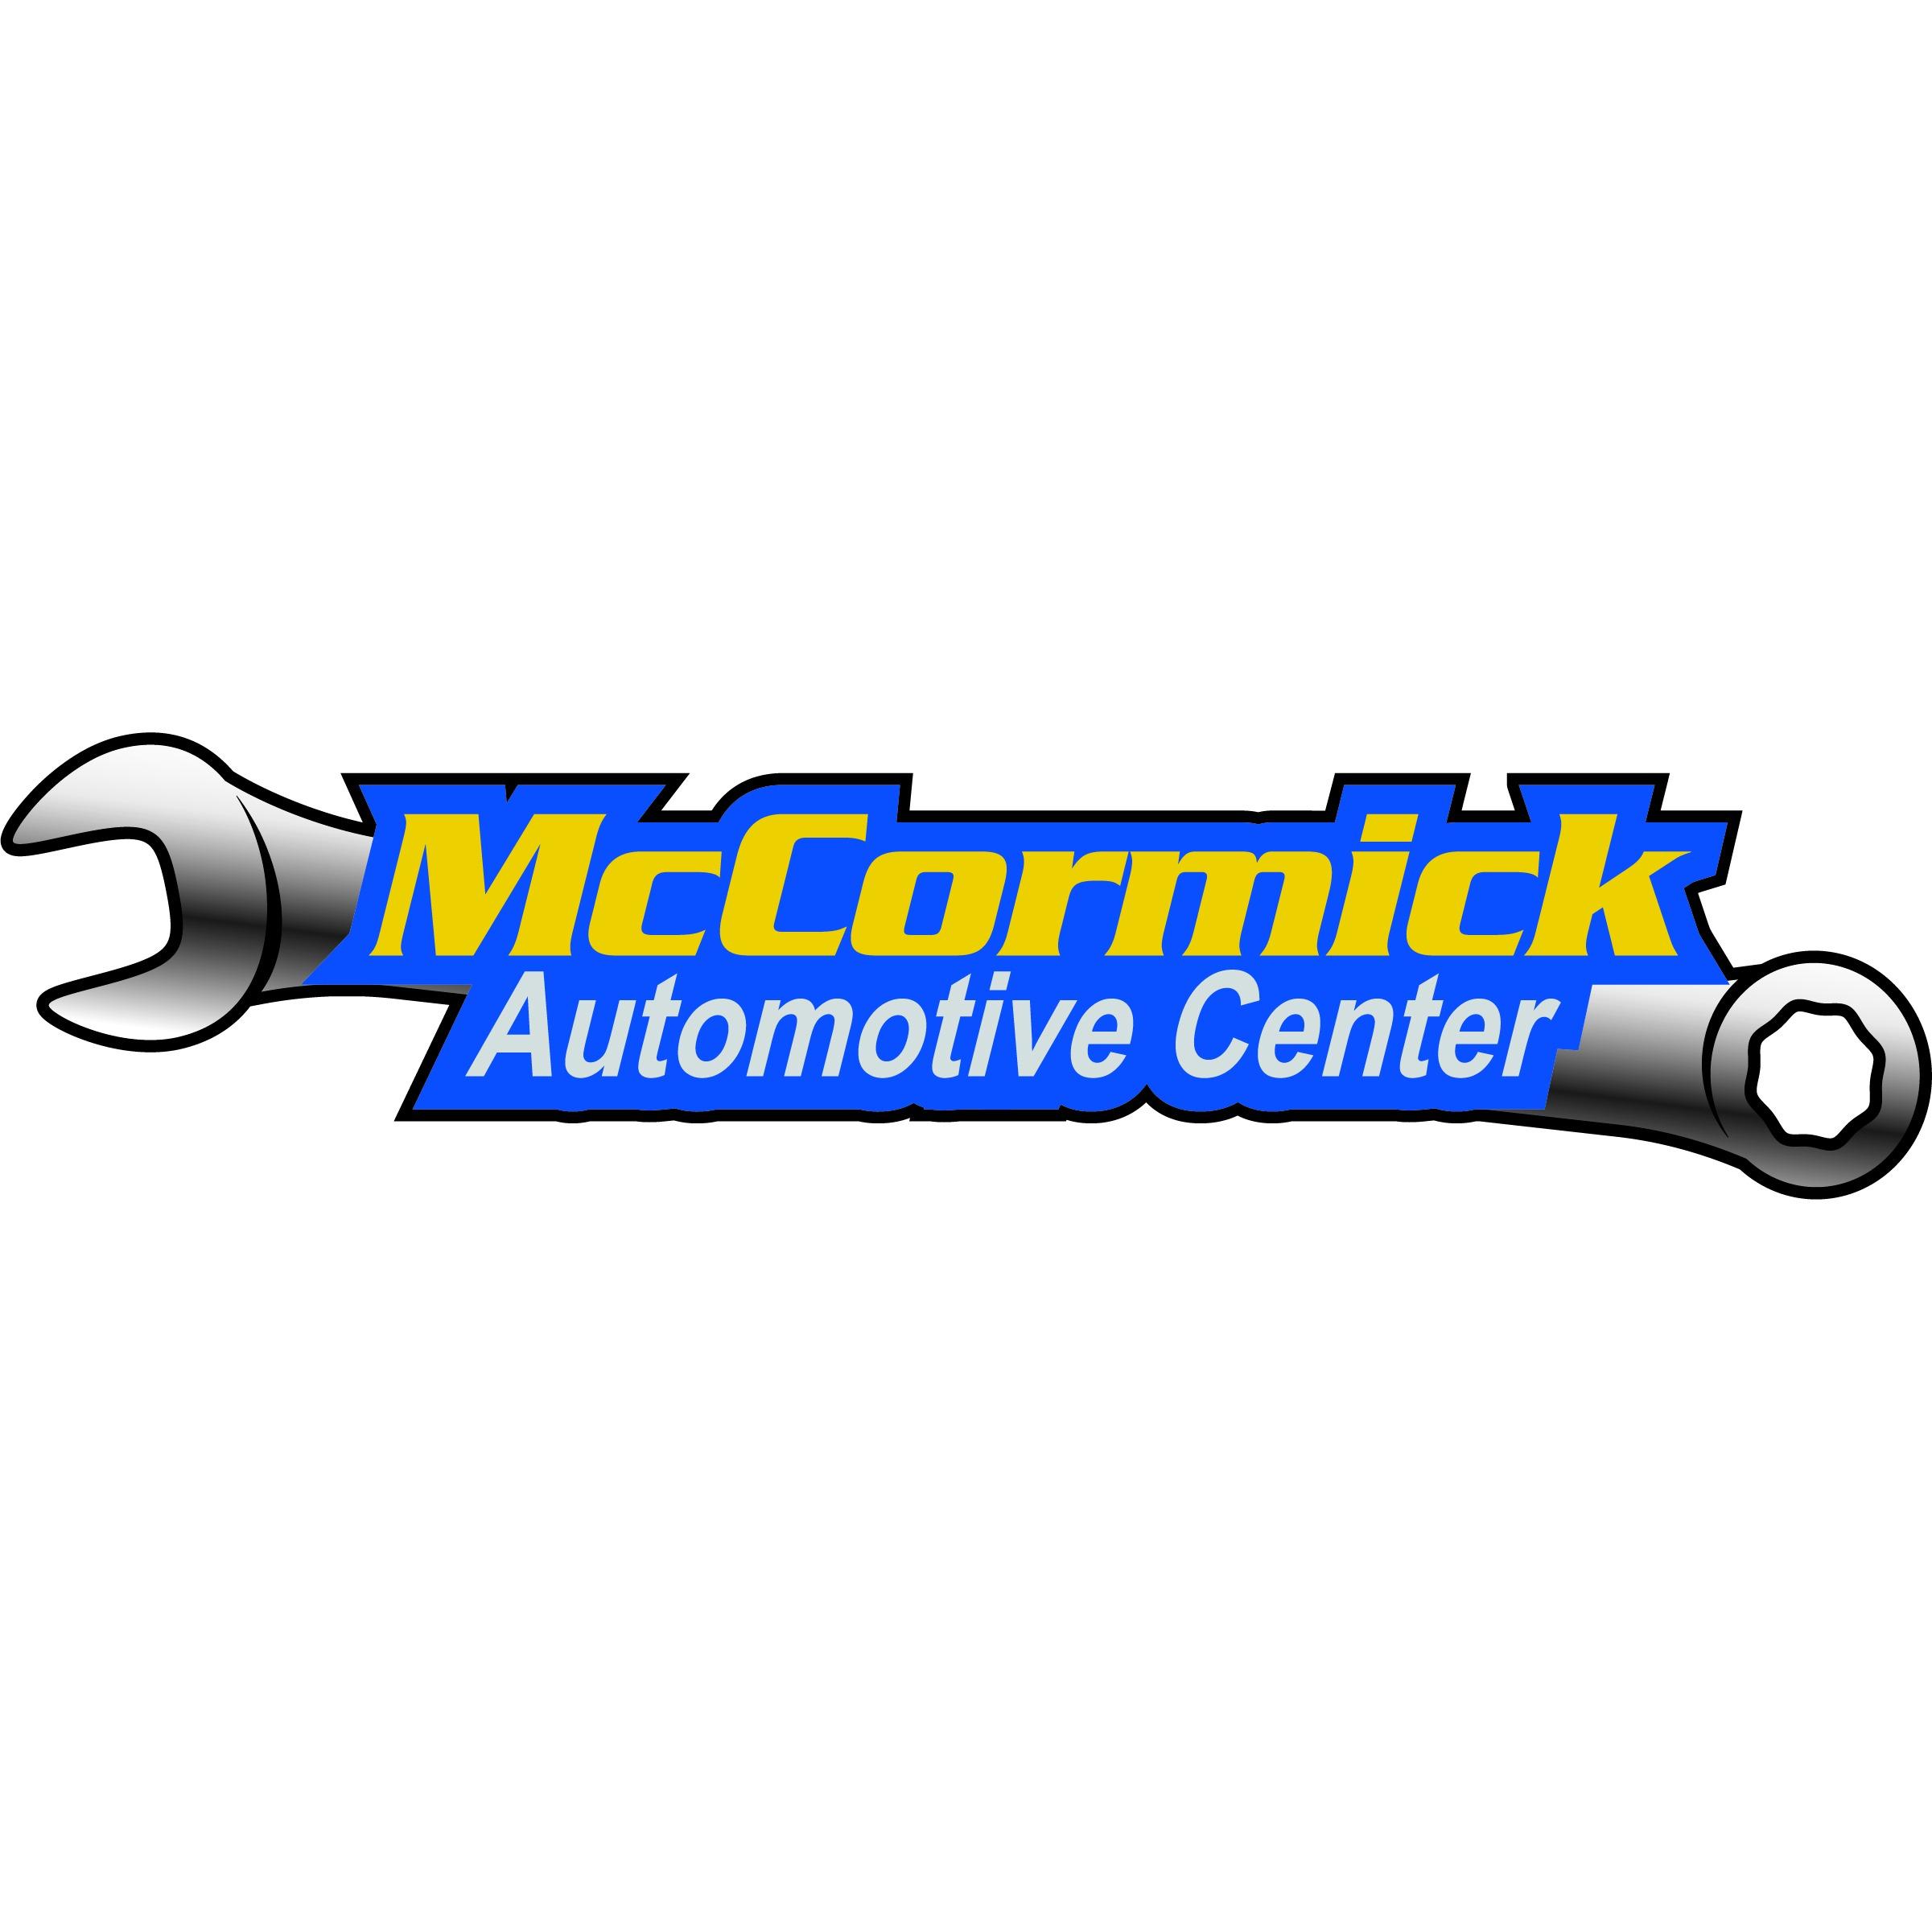 McCormick Automotive Center - Fort Collins, CO 80525 - (970)472-2030 | ShowMeLocal.com